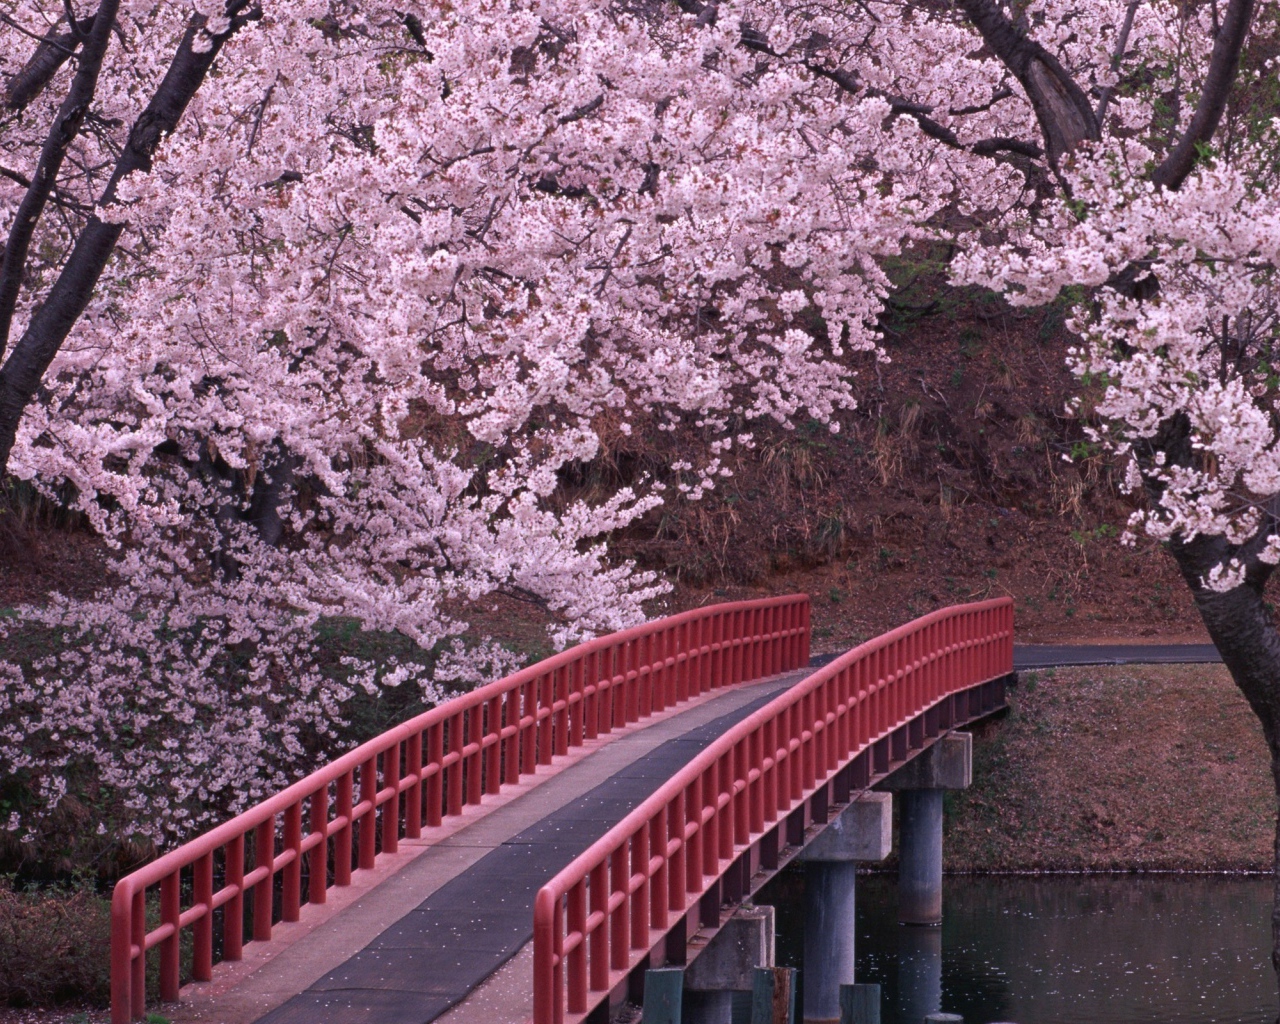 Мост через реку в цветущем саду